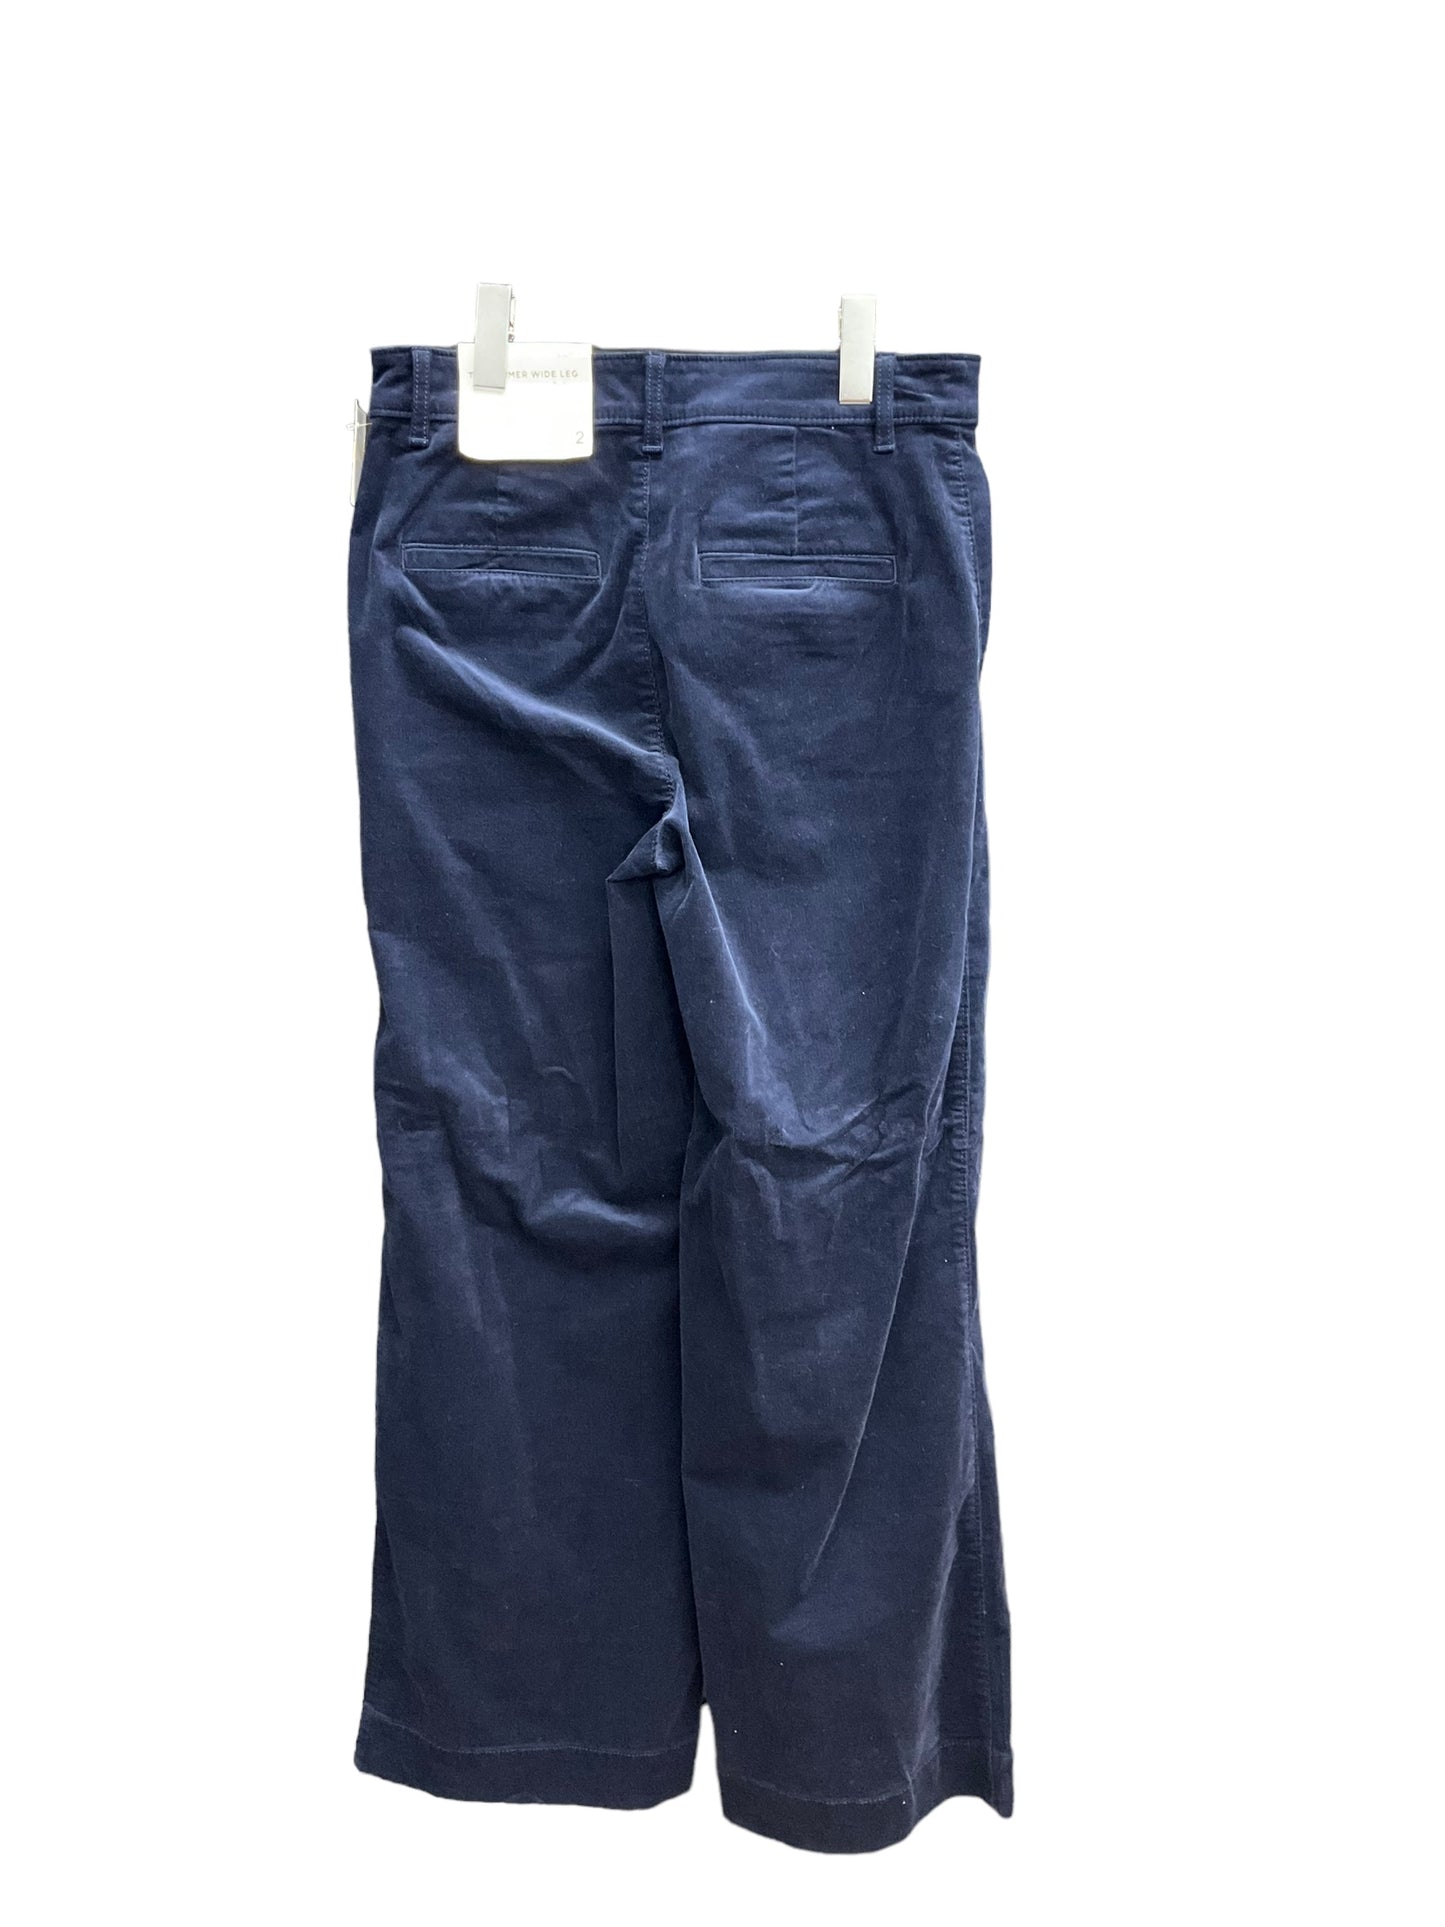 Pants Corduroy By Loft O  Size: 2